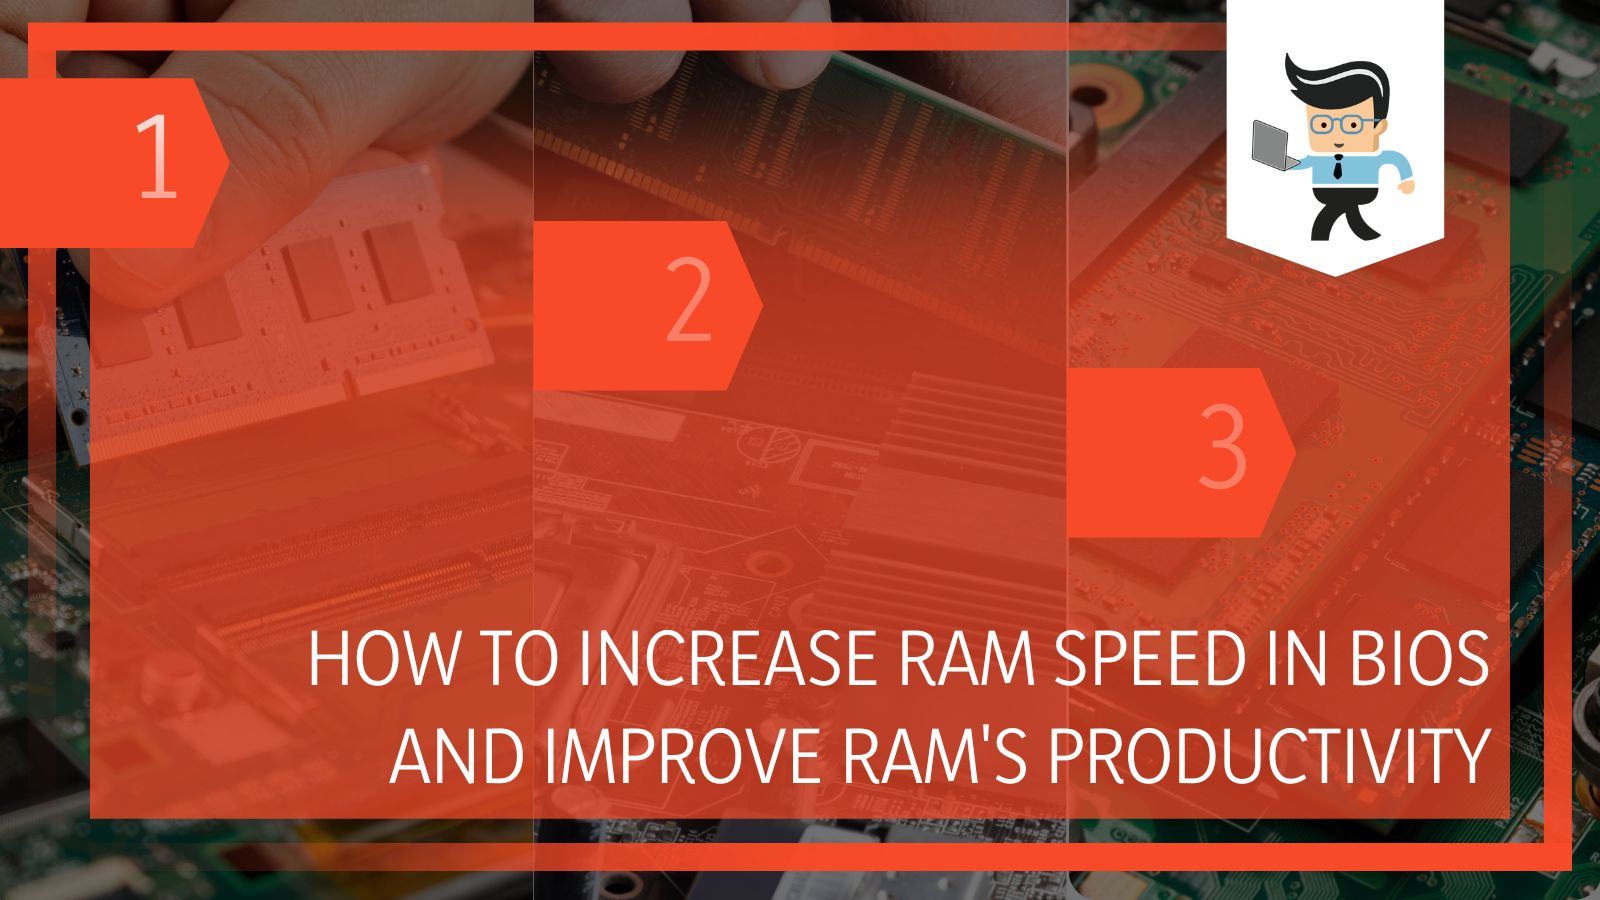 Increase Ram Speed in Bios